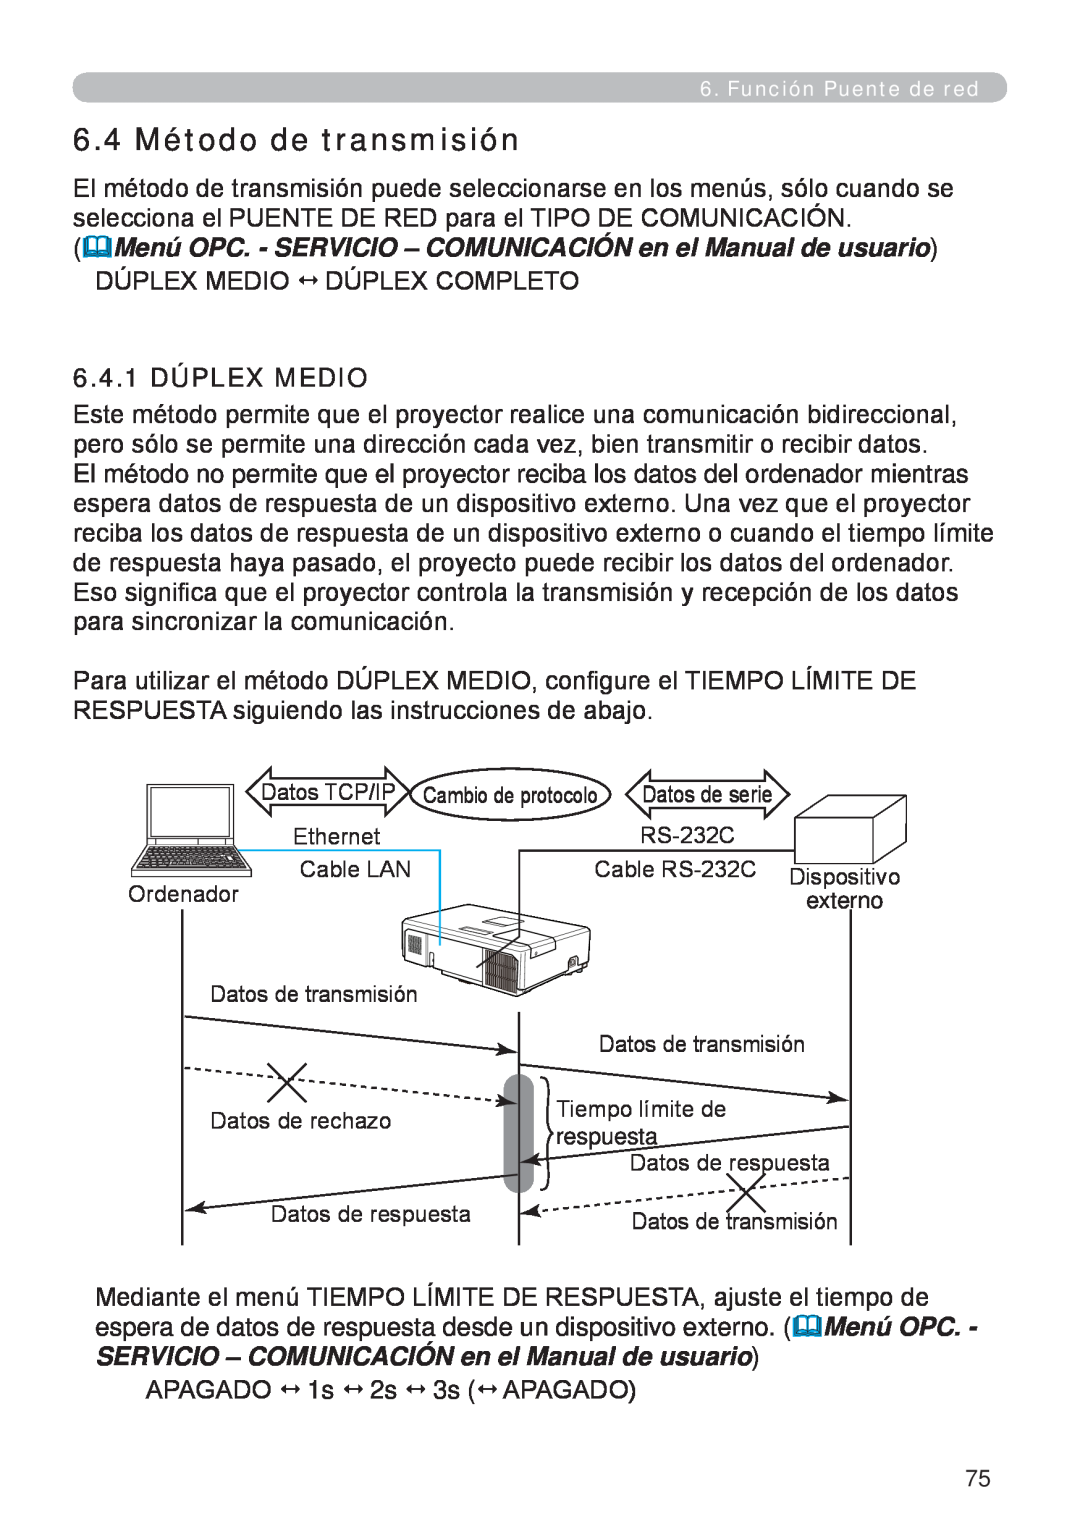 InFocus W60, W61 manual 6.4 Método de transmisión, 6.4.1 DÚPLEX MEDIO 